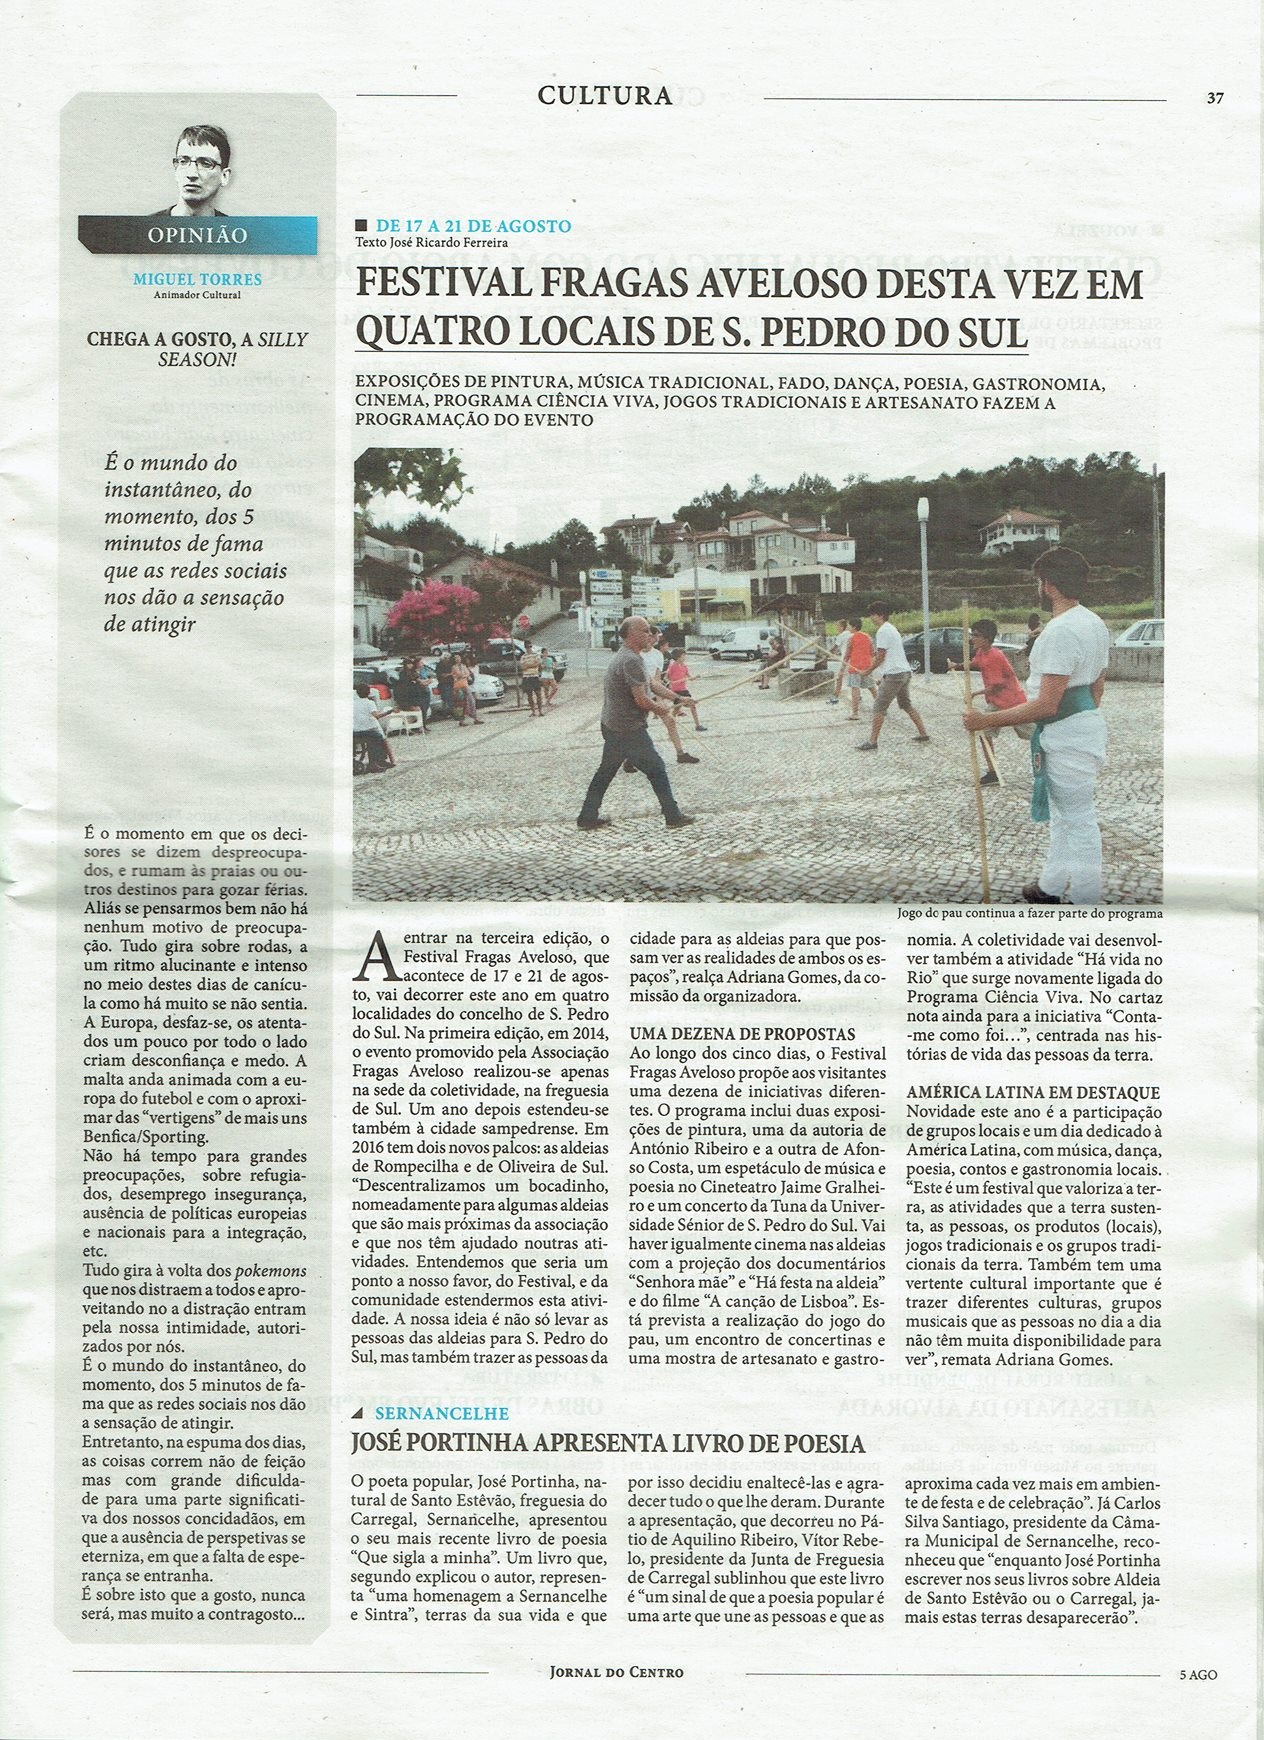 Festival-Fragas-Aveloso-2016-Jornal-do-Centro.jpg